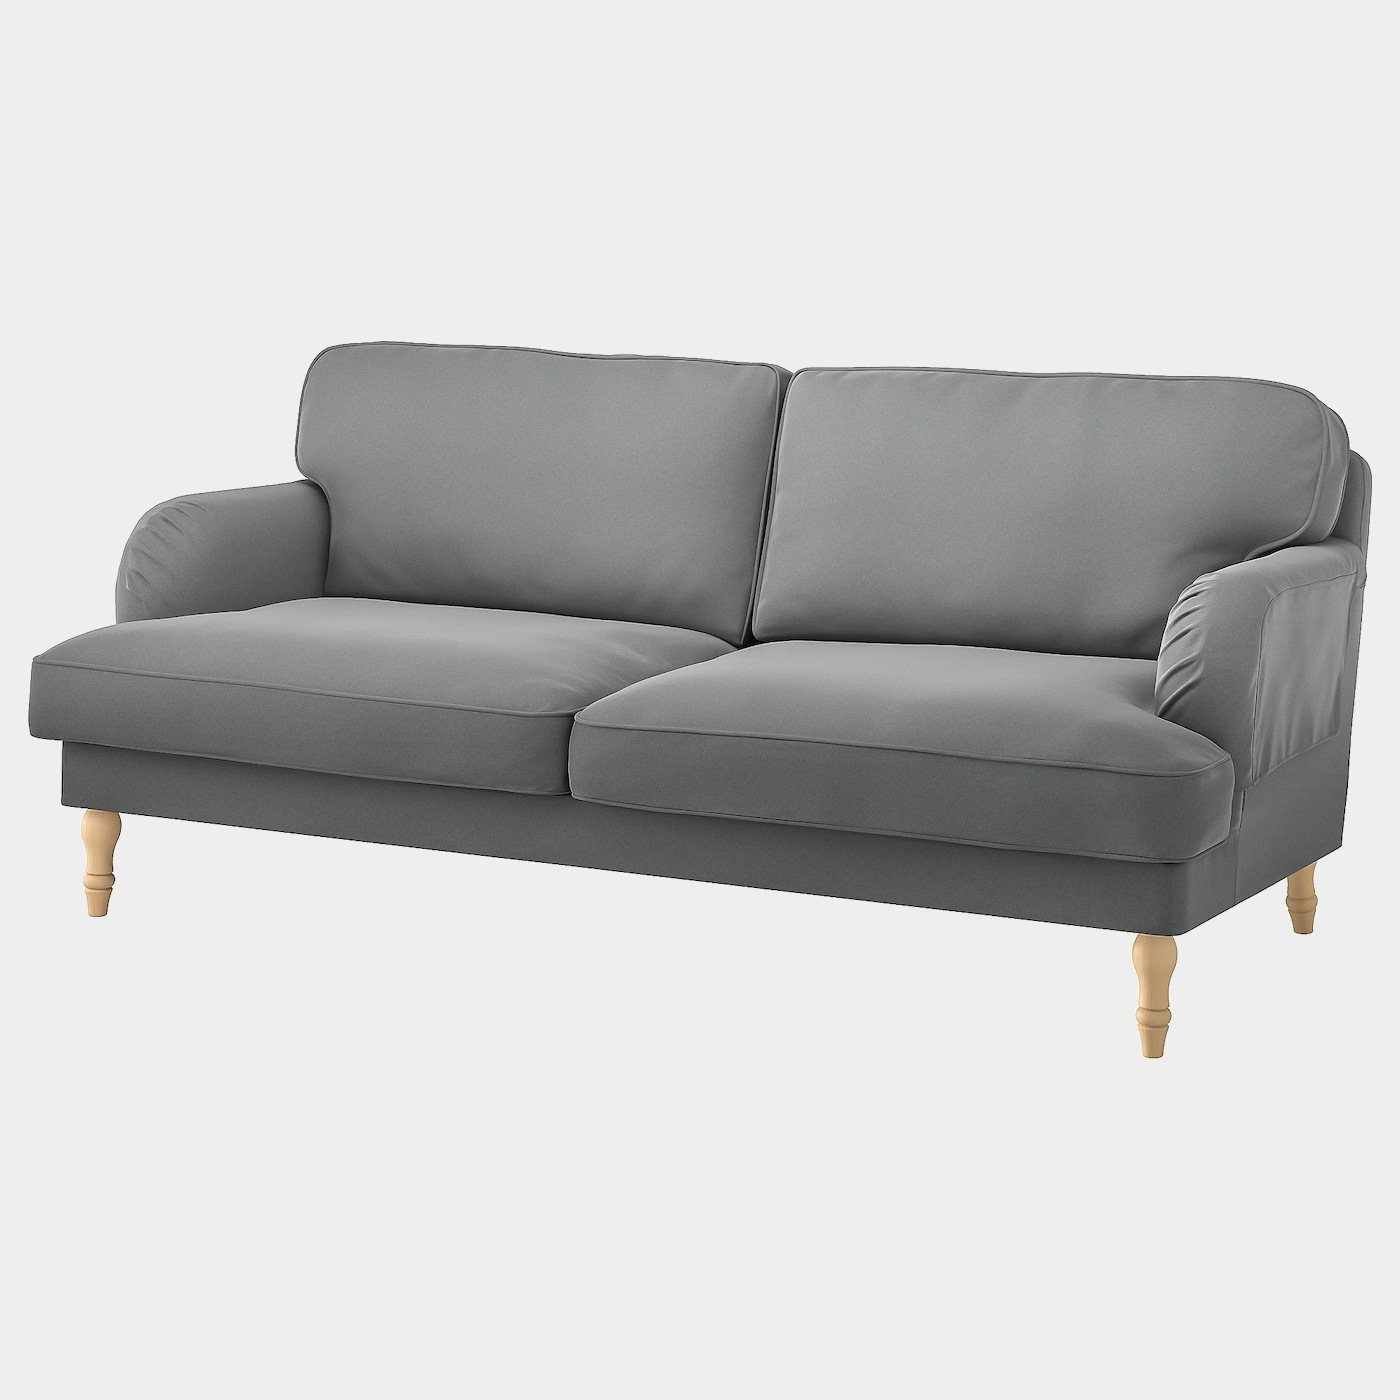 STOCKSUND Bezug 3er-Sofa  - extra Bezüge - Möbel Ideen für dein Zuhause von Home Trends. Möbel Trends von Social Media Influencer für dein Skandi Zuhause.